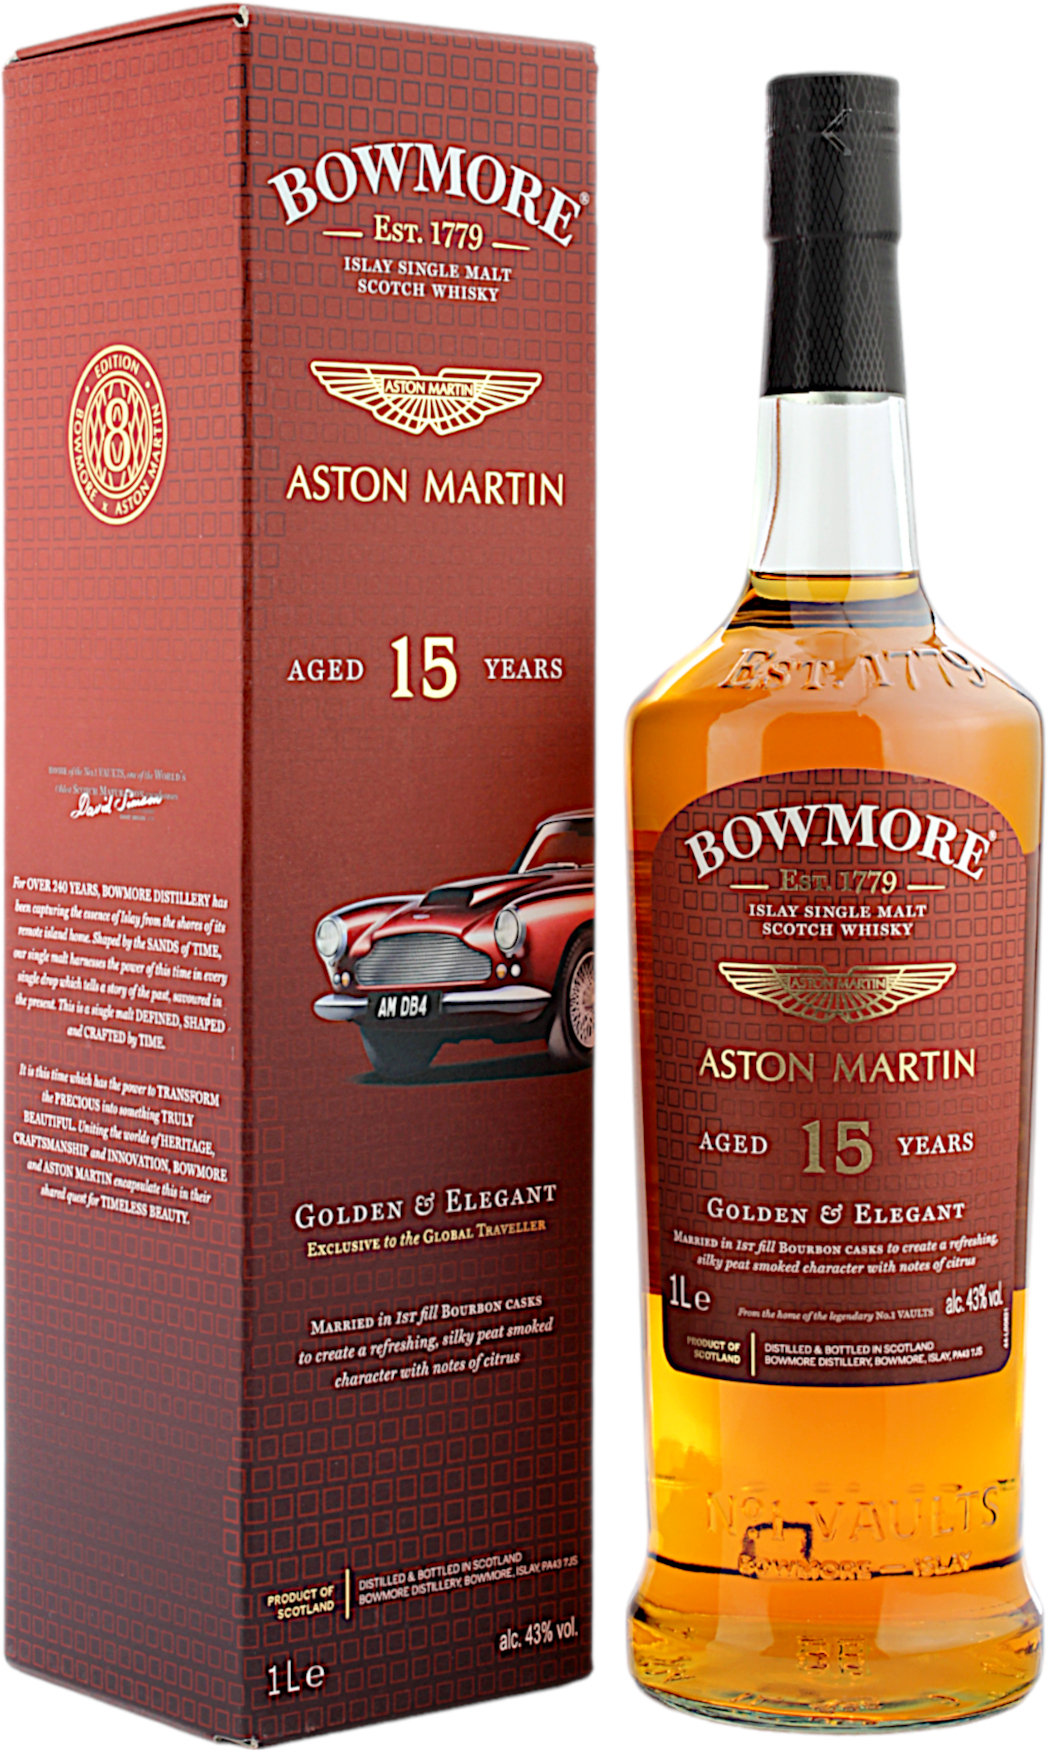 Bowmore 15 Jahre Golden & Elegant Aston Martin Edition 43.0% 1 Liter